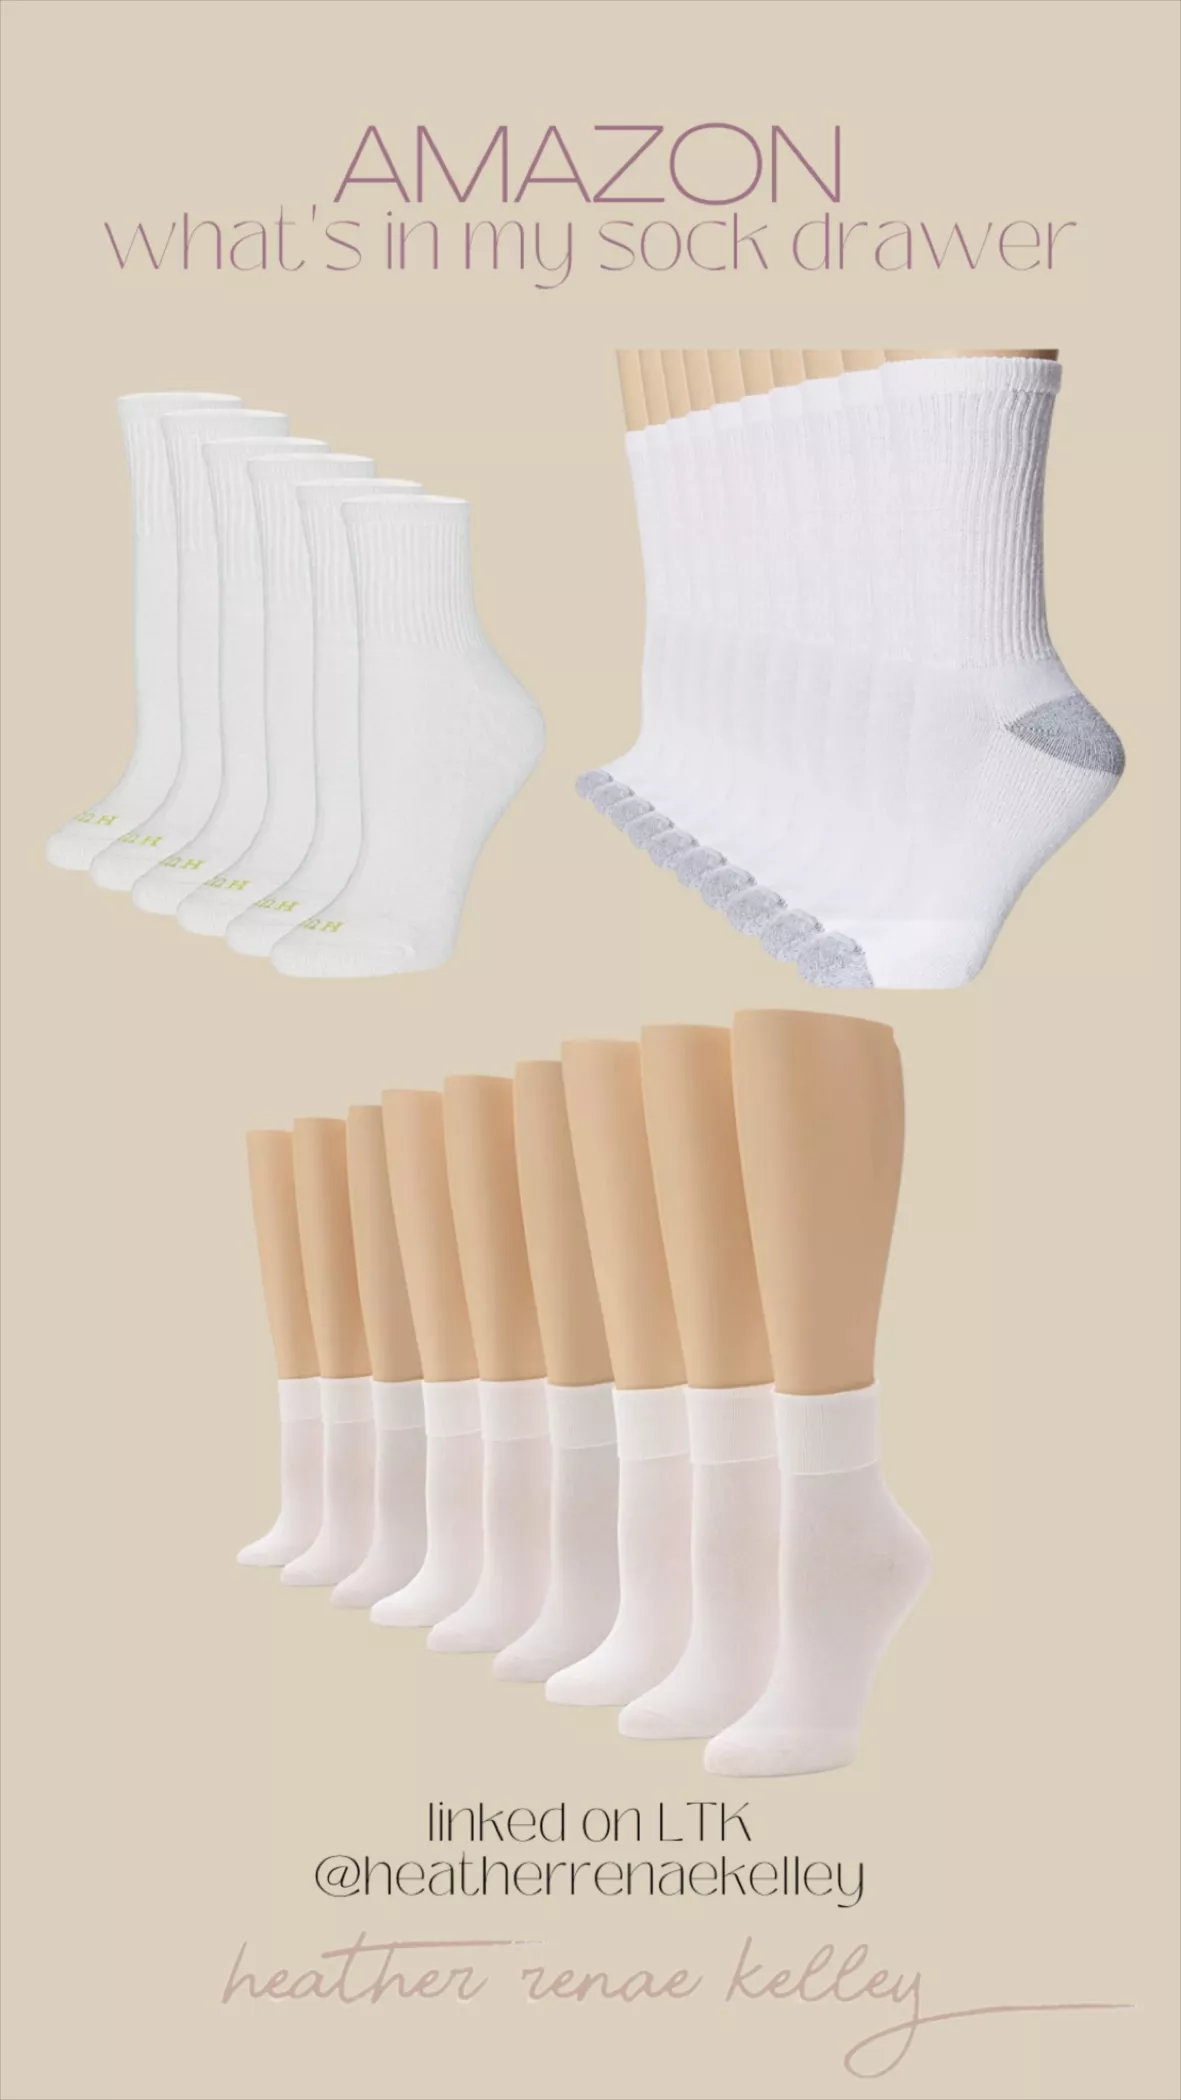 No nonsense womens Cotton Basic Cuff Sock